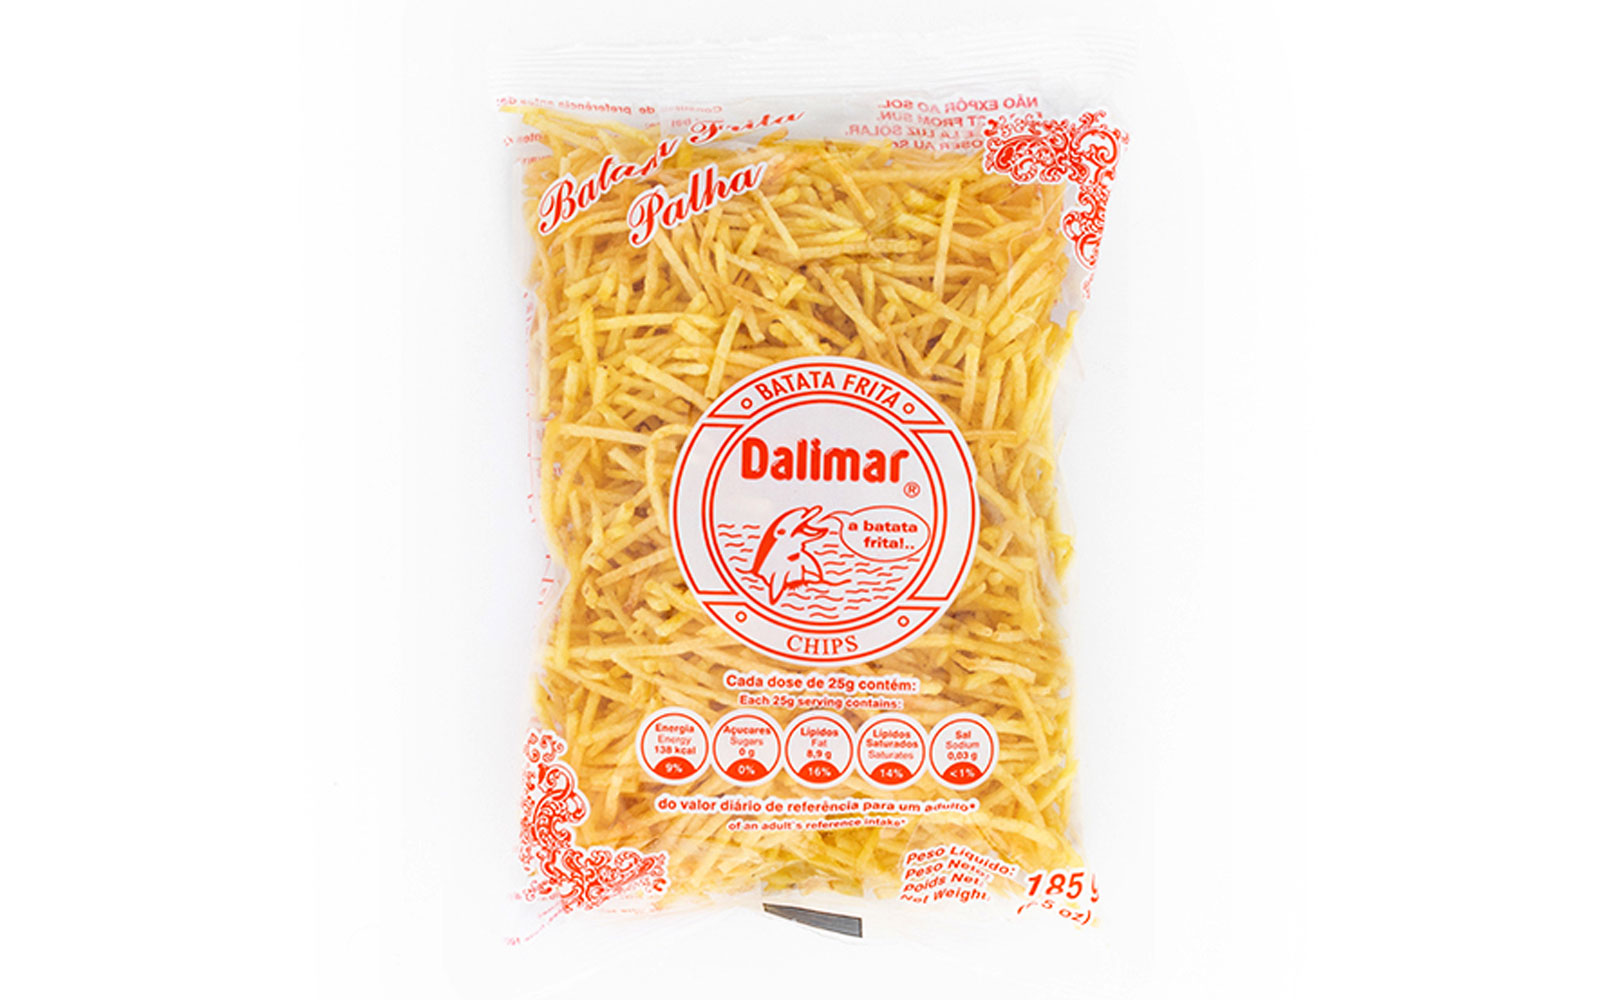 Dalimar chips – batata frita – palha palha – Kartoffelchips – 185g